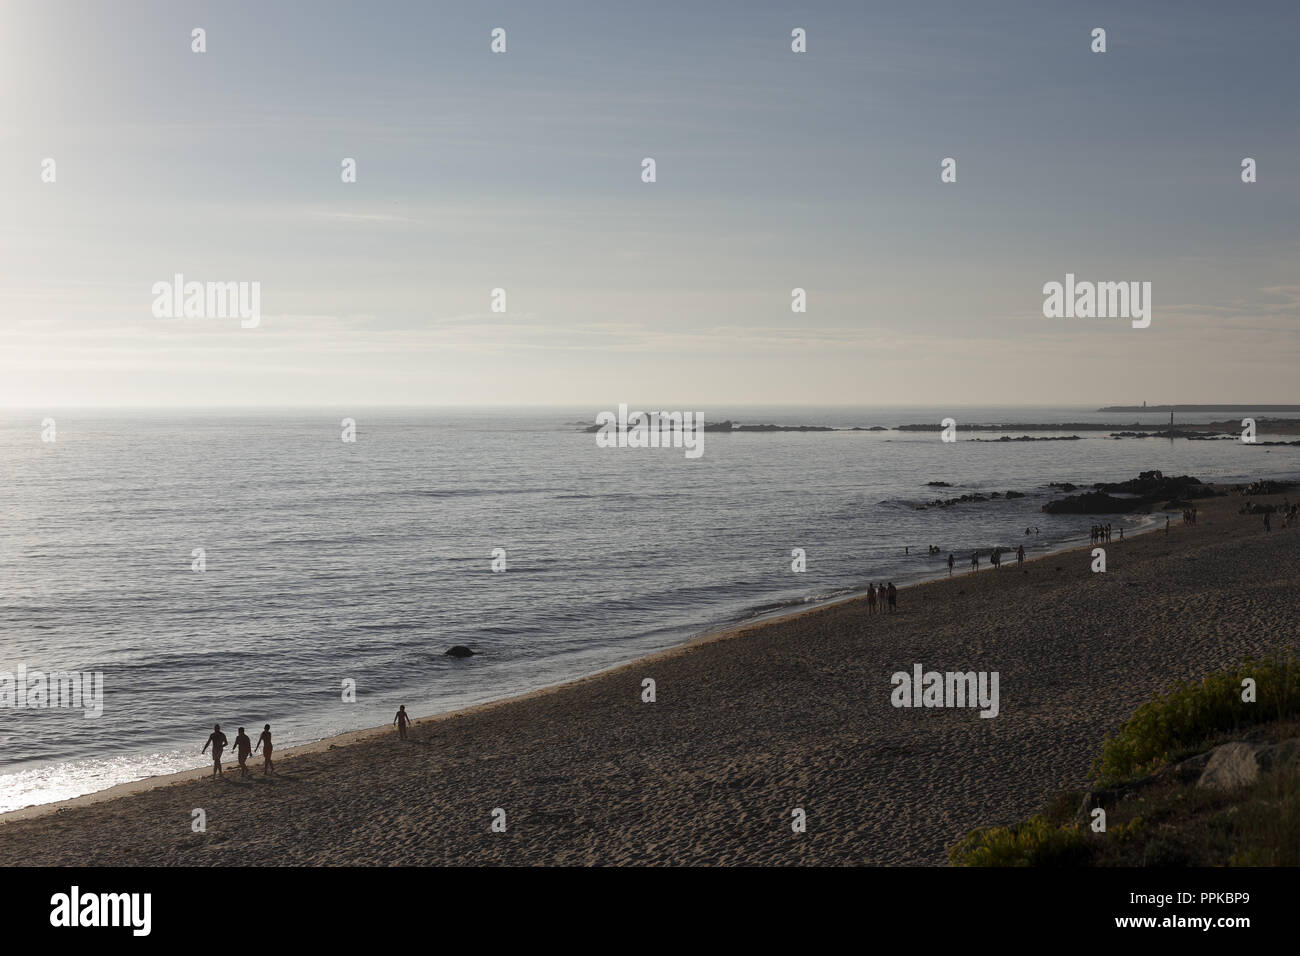 Vila do Conde, Portugal - 6 août 2014 : Les gens qui marchent sur la plage au coucher du soleil Banque D'Images